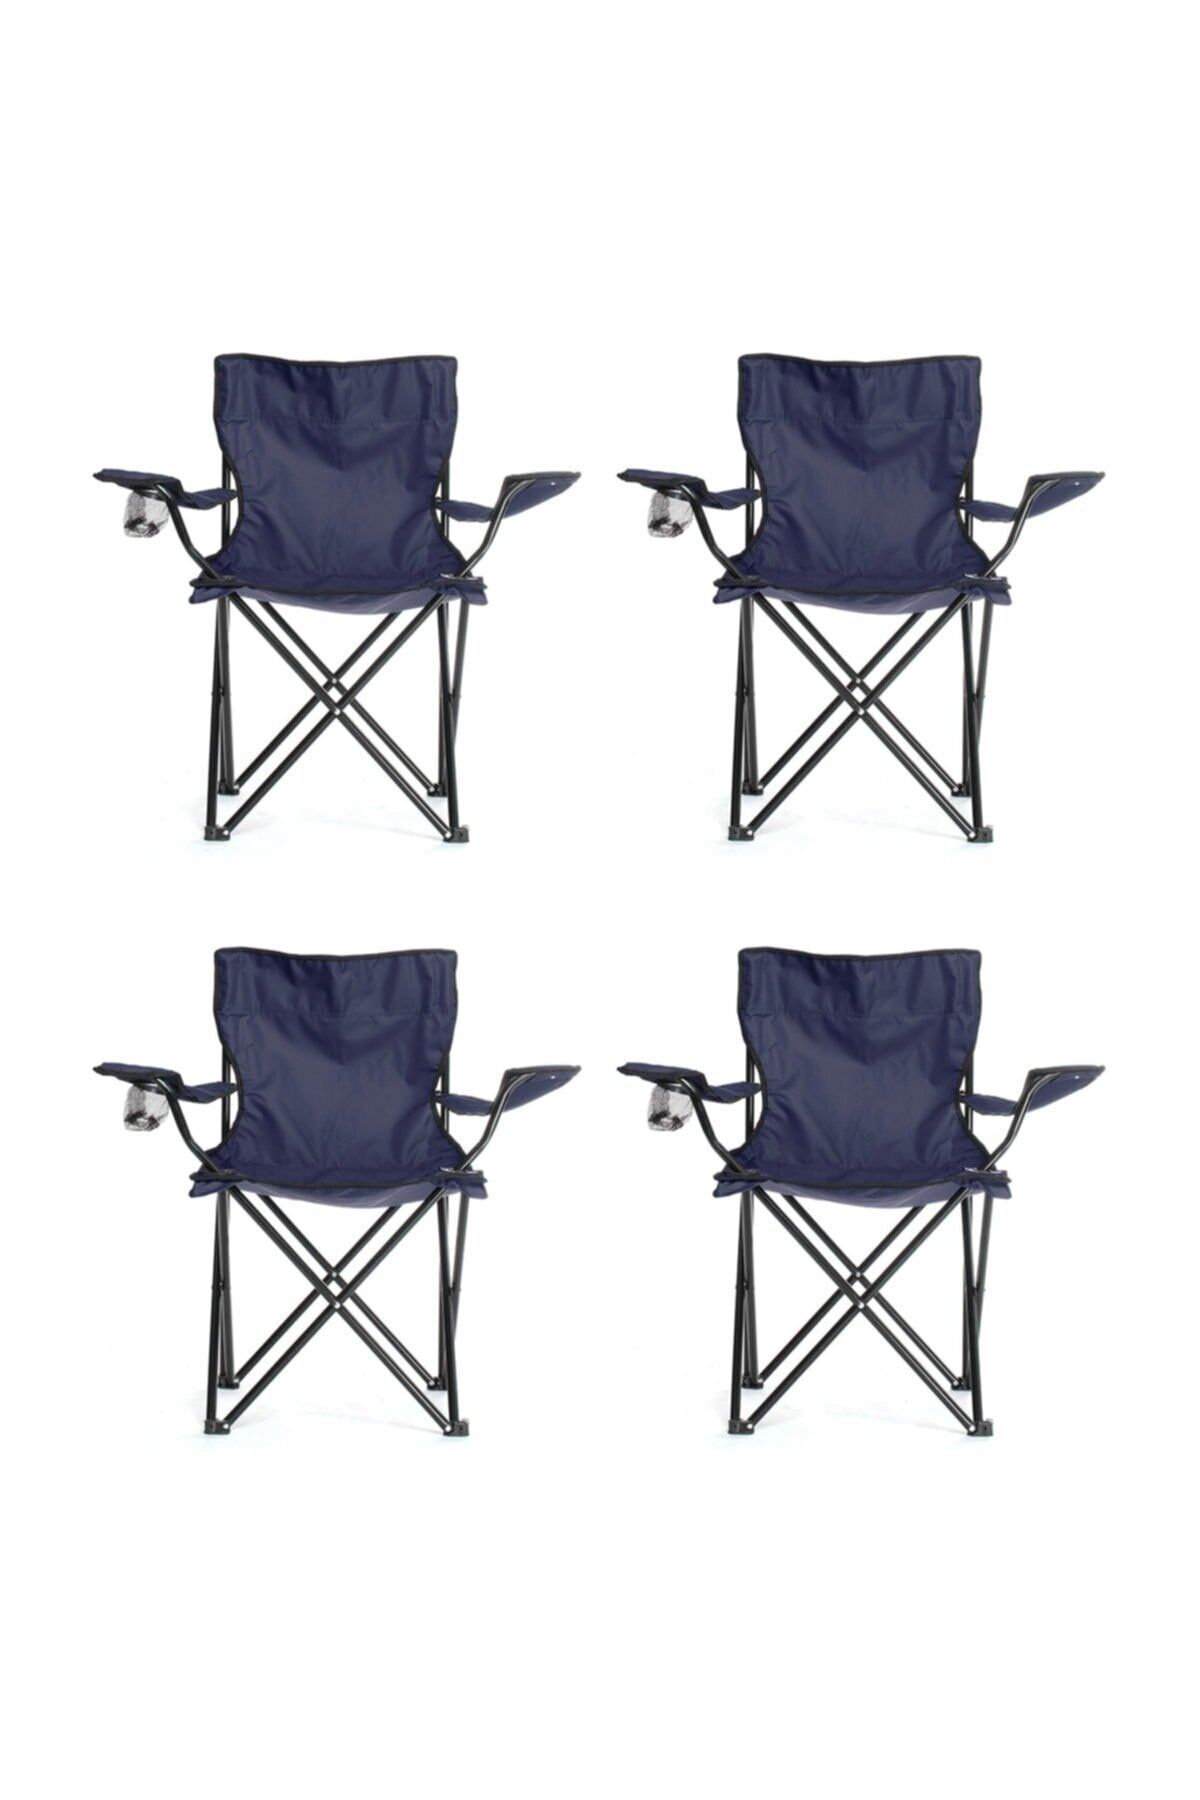 Body-GYM Taşınabilir Katlanır Kamp Sandalyesi 4 Adet - Lacivert